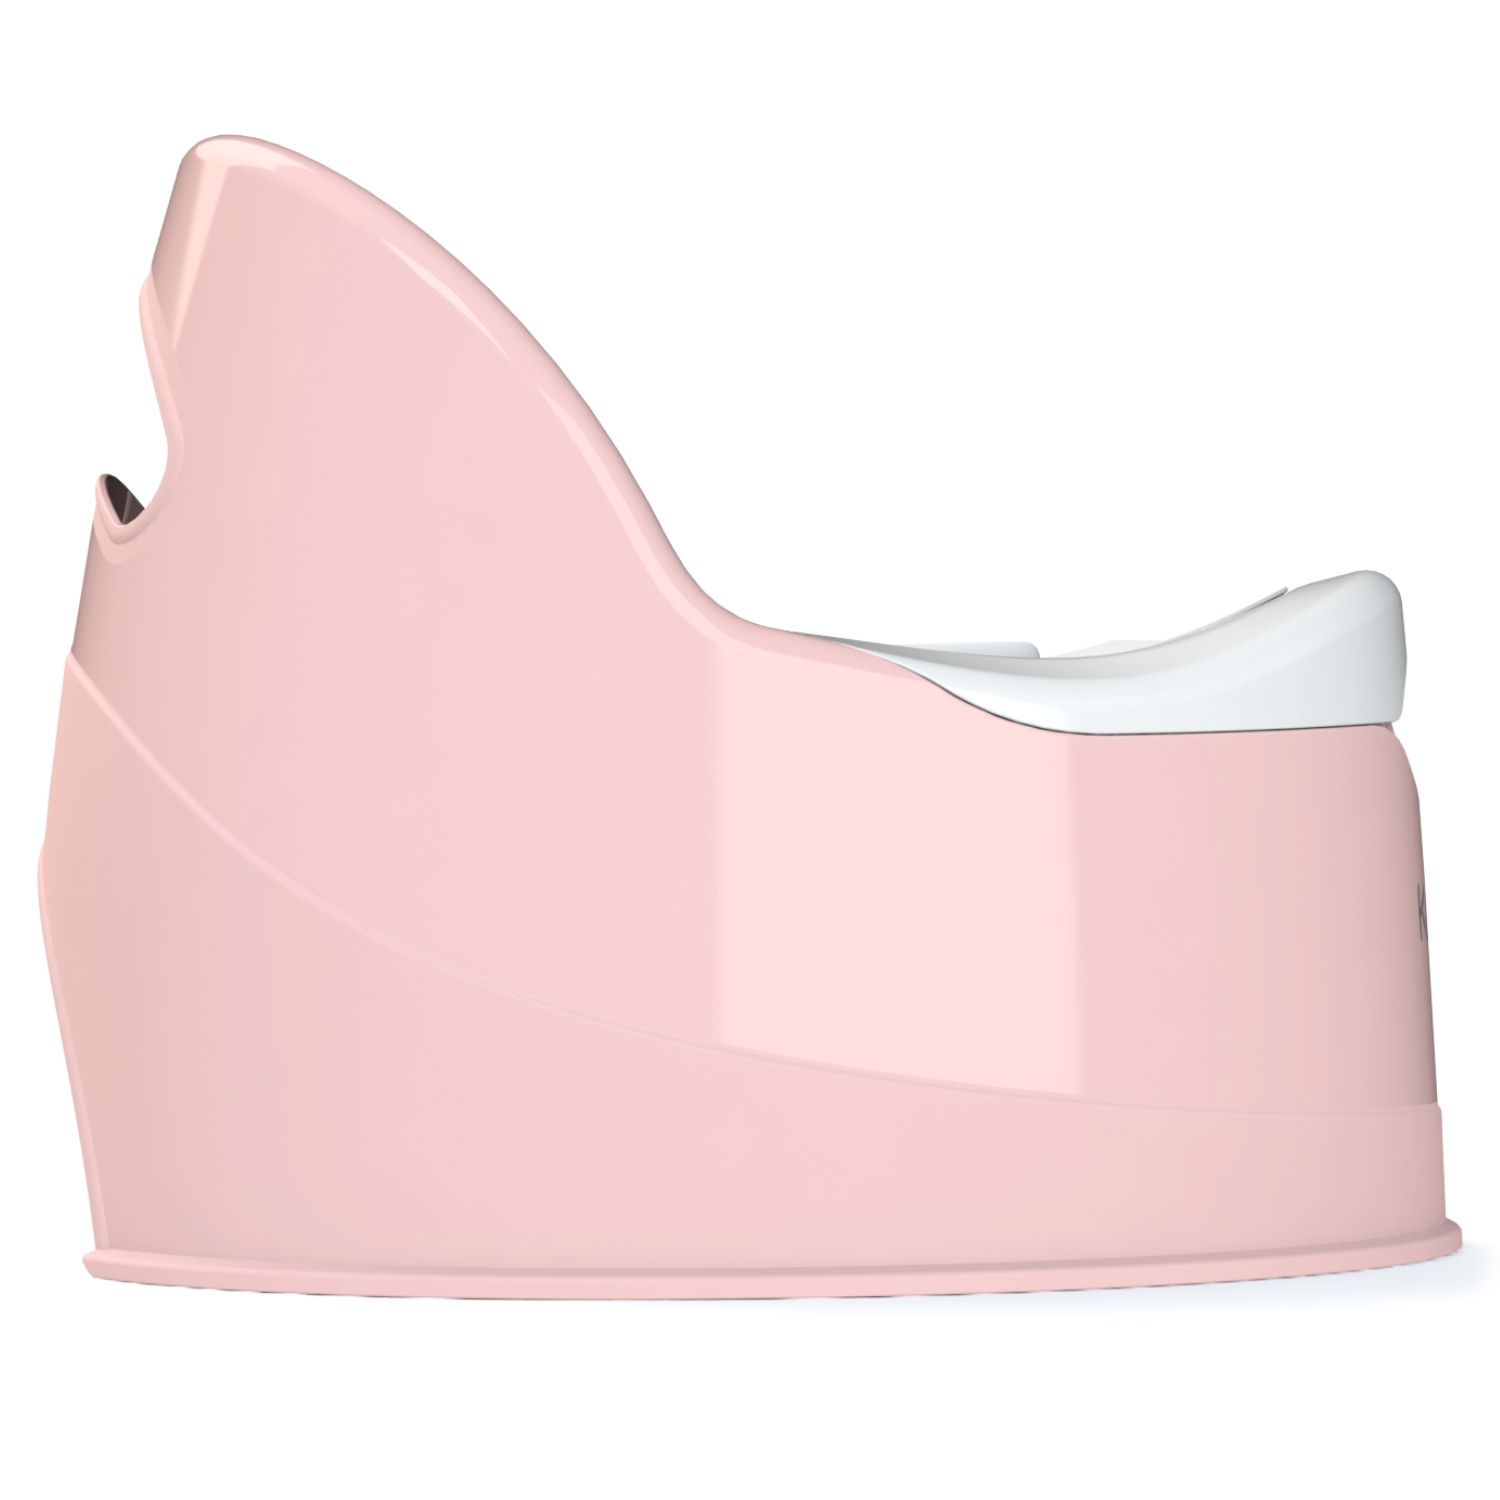 Горшок туалетный KidWick Гранд с крышкой Розовый-Белый - фото 5